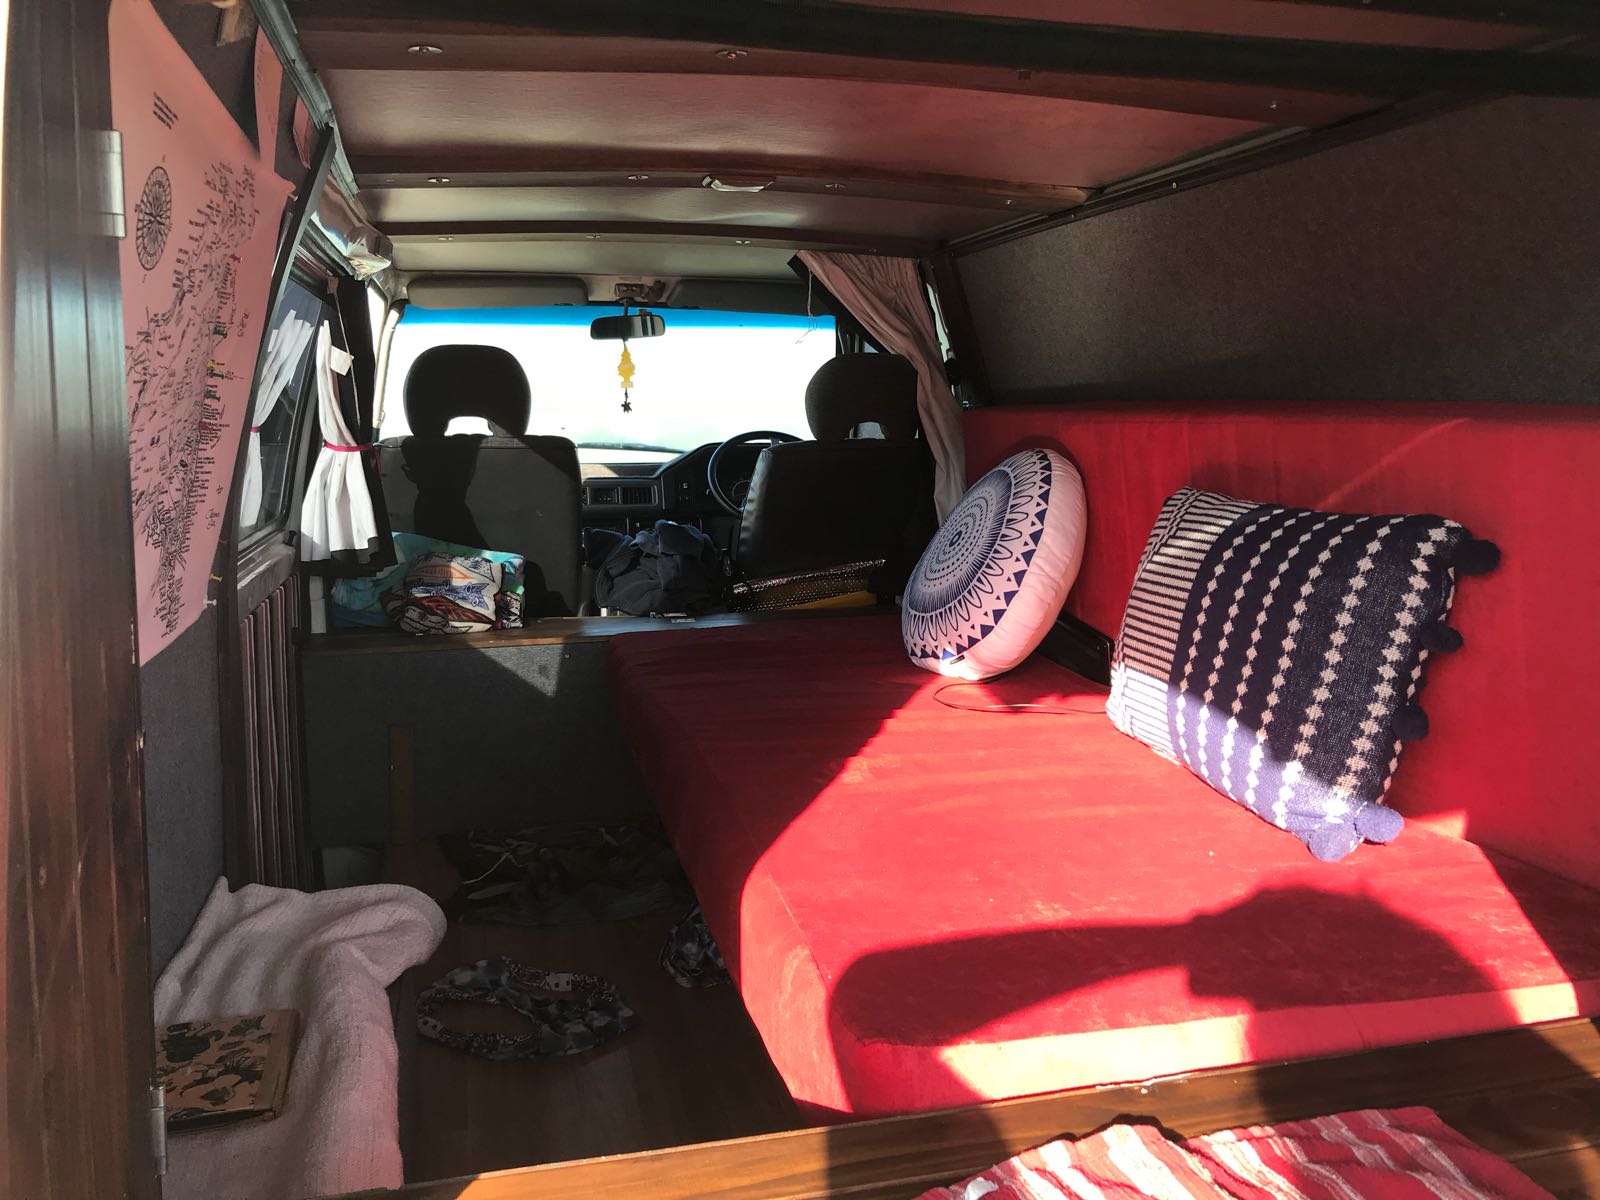 mitsubishi express 4x4 as a camper van